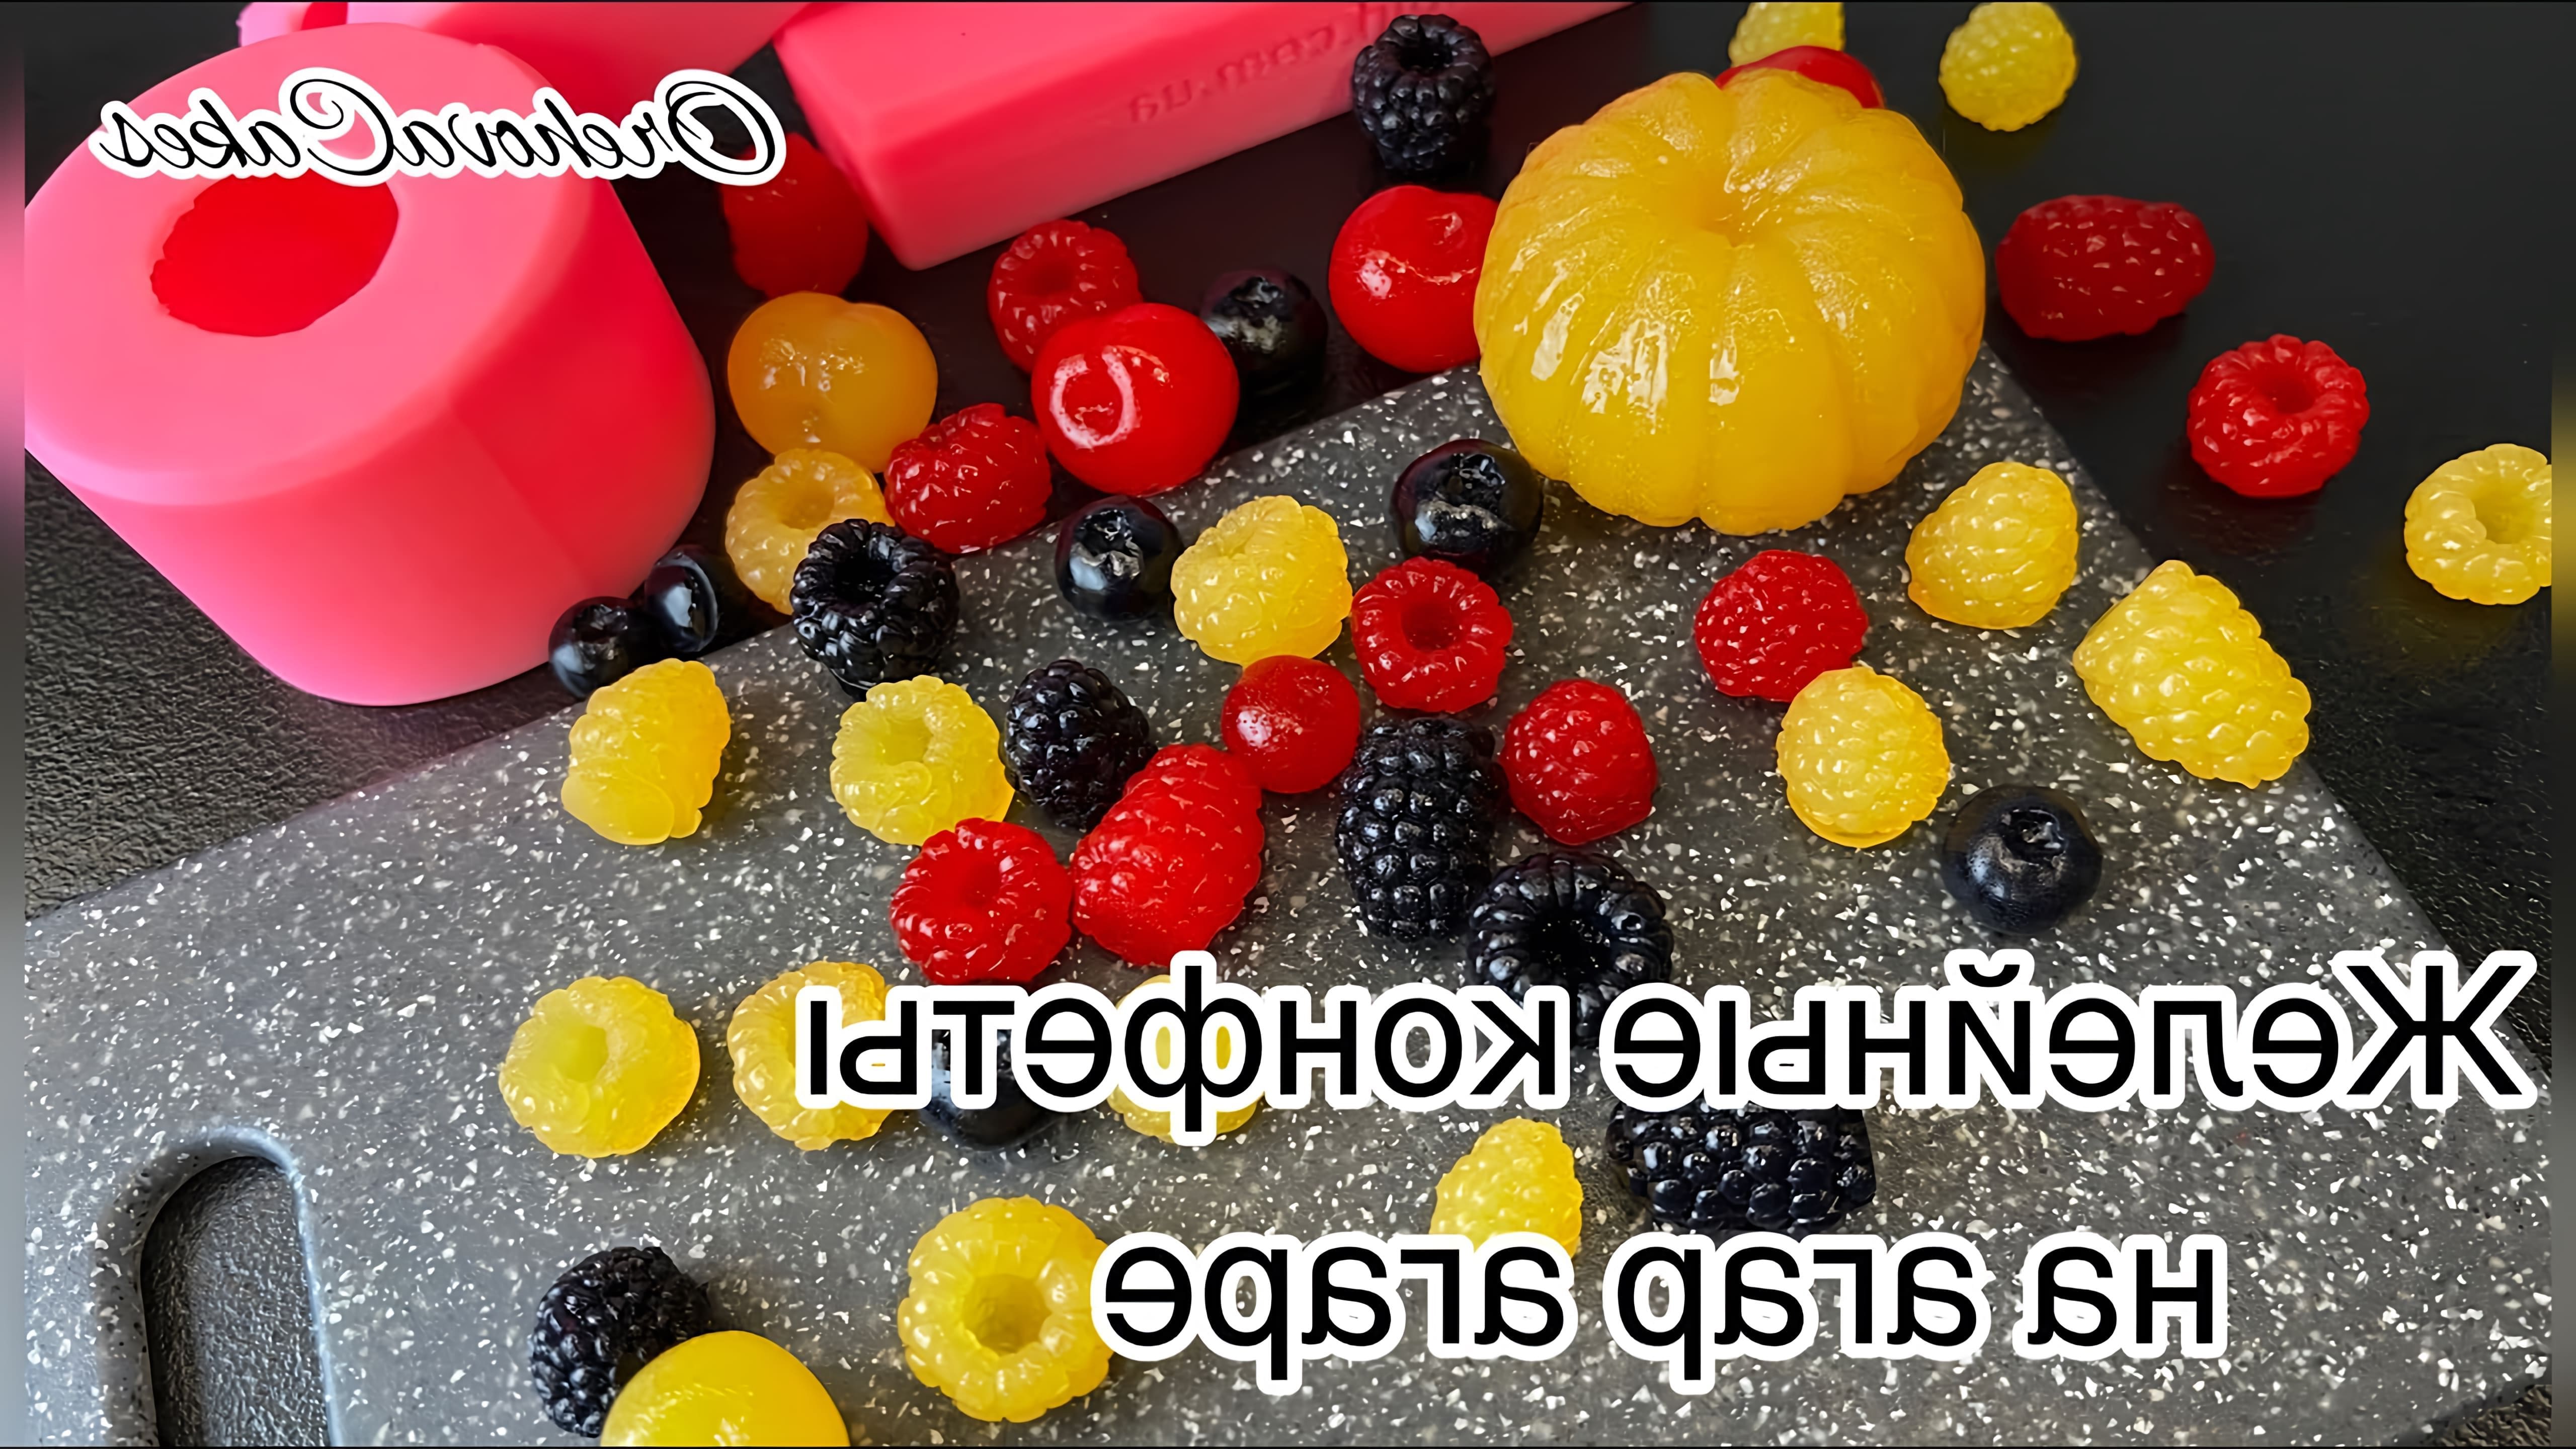 В этом видео демонстрируется процесс приготовления желейных конфет в виде ягод с использованием силиконовых форм и агар-агара